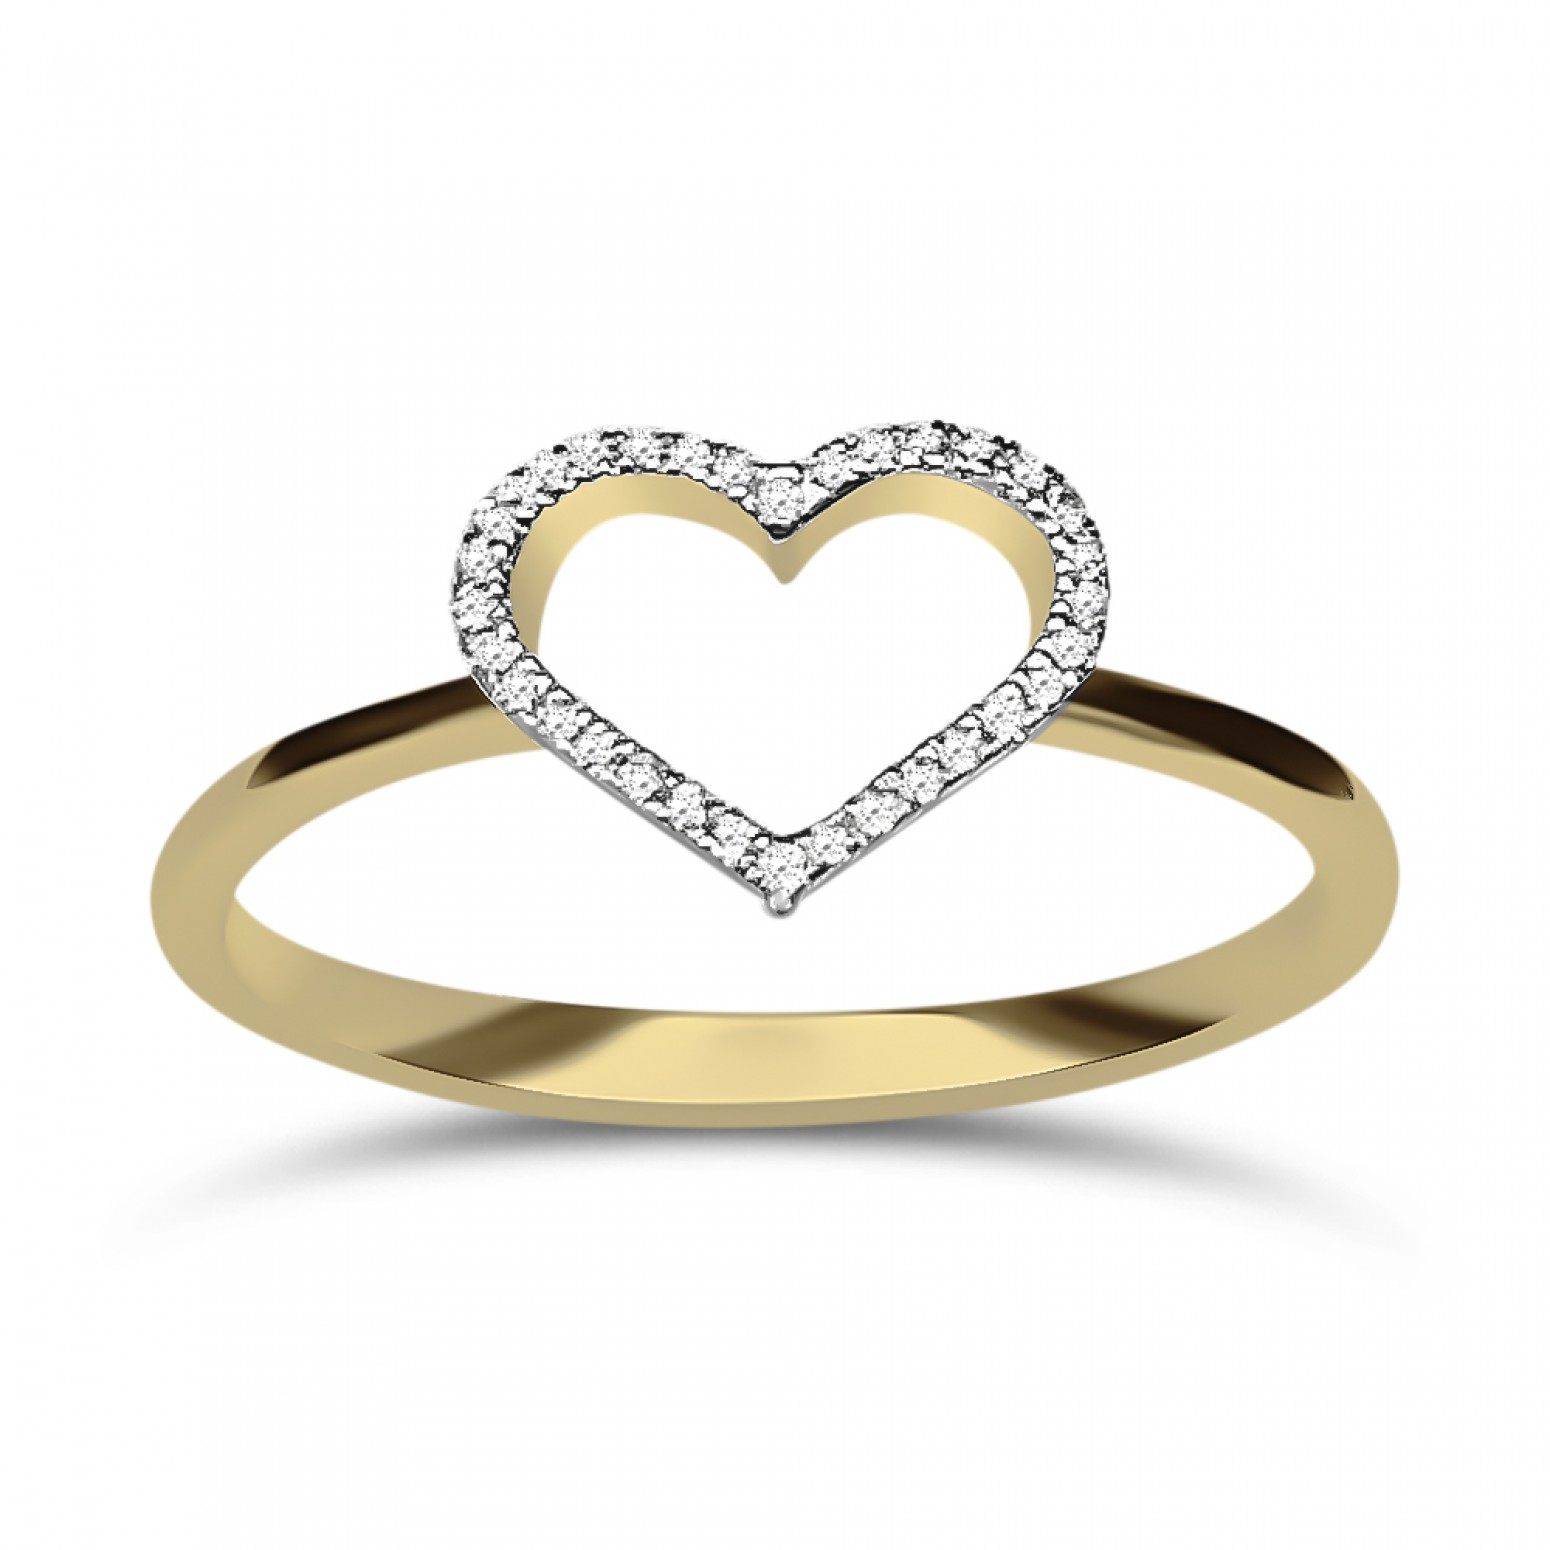 Heart ring 14K gold with diamonds 0.04ct, VS1, H da3856 ENGAGEMENT RINGS Κοσμηματα - chrilia.gr